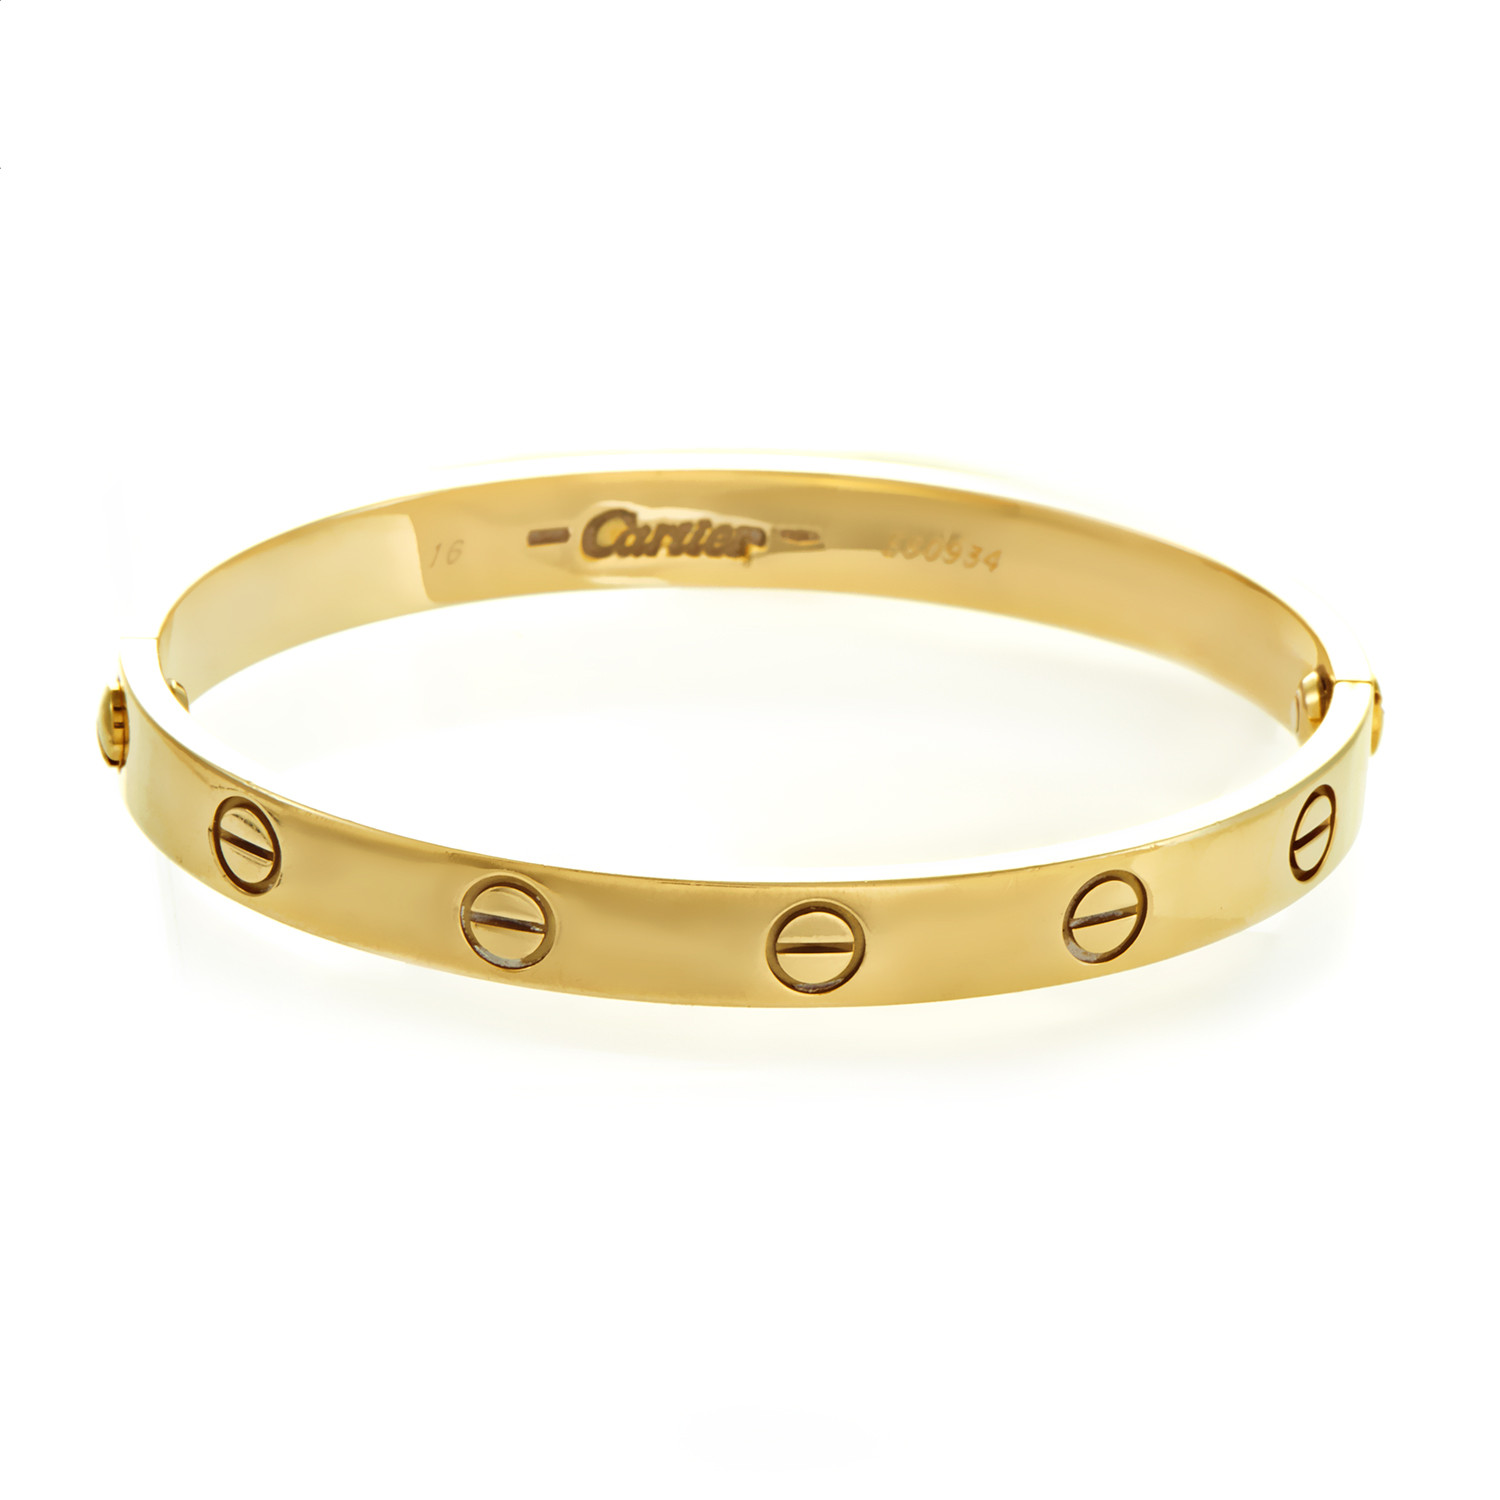 Used Cartier Love Bracelet
 Cartier LOVE Women s 18K Yellow Gold Bracelet Size 16